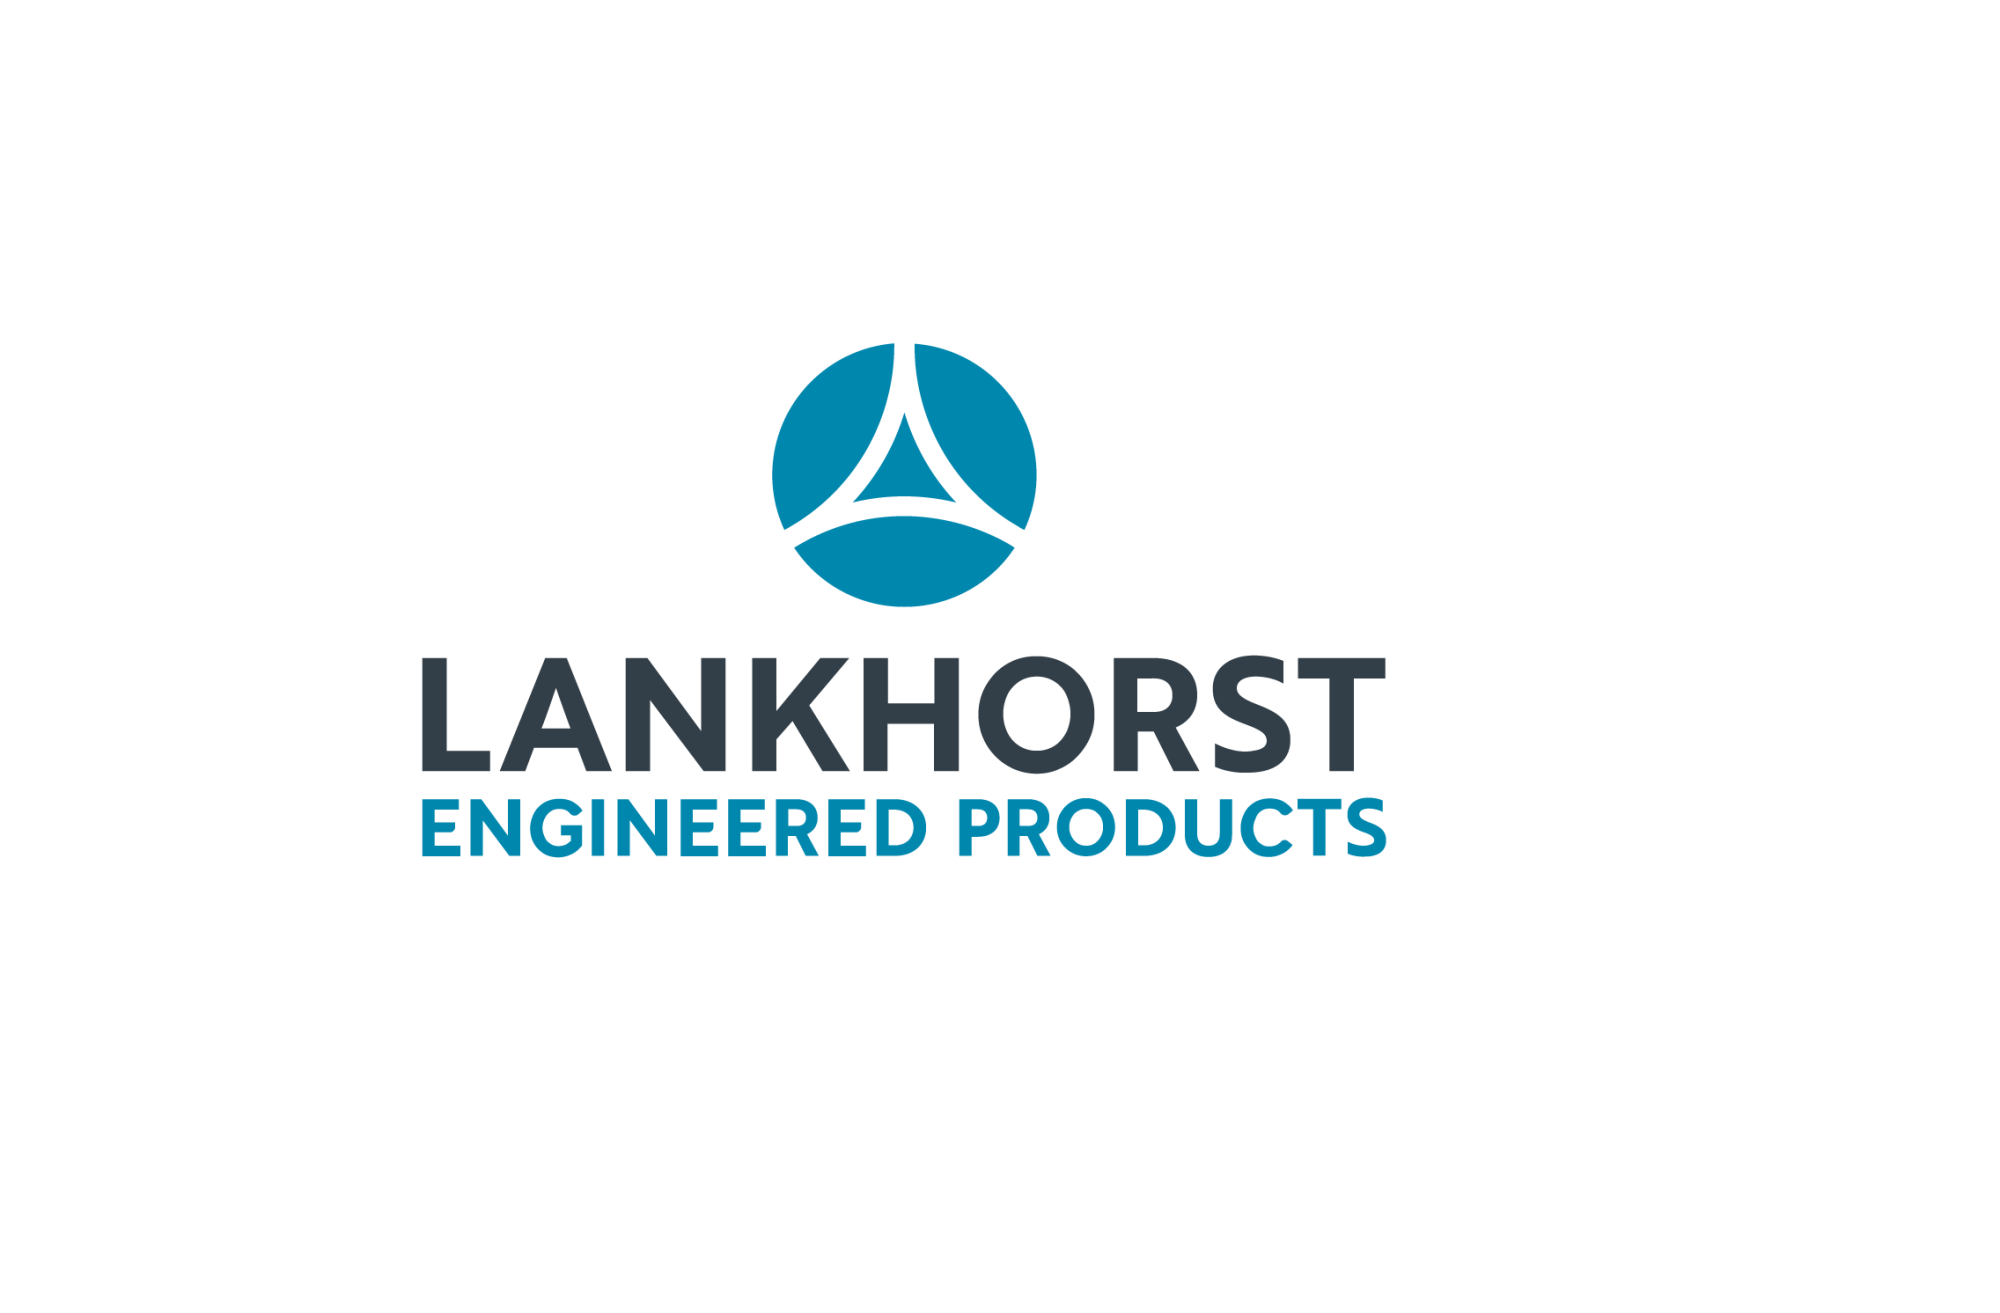 Lankhorst engineered products logo zwarte blauwe letters met symbool